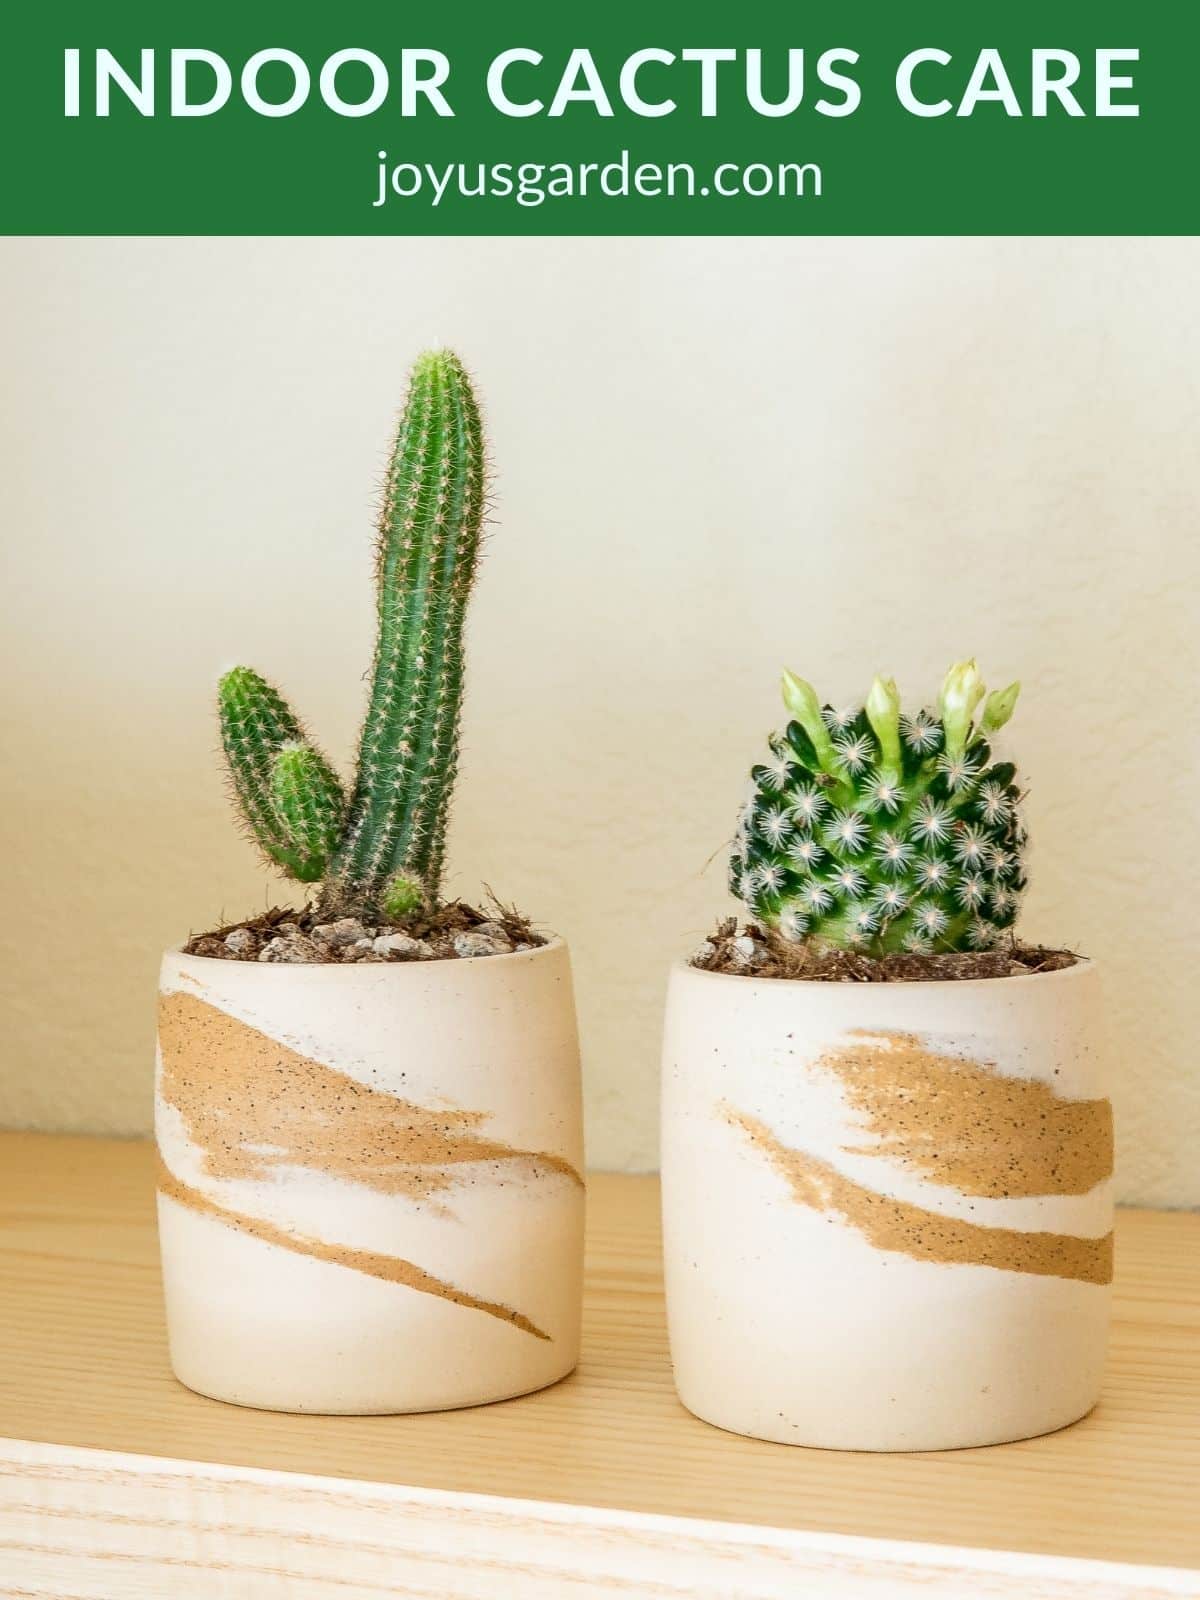  Yopiq kaktuslarni parvarish qilish: kaktus uy o'simliklari uchun qo'llanma